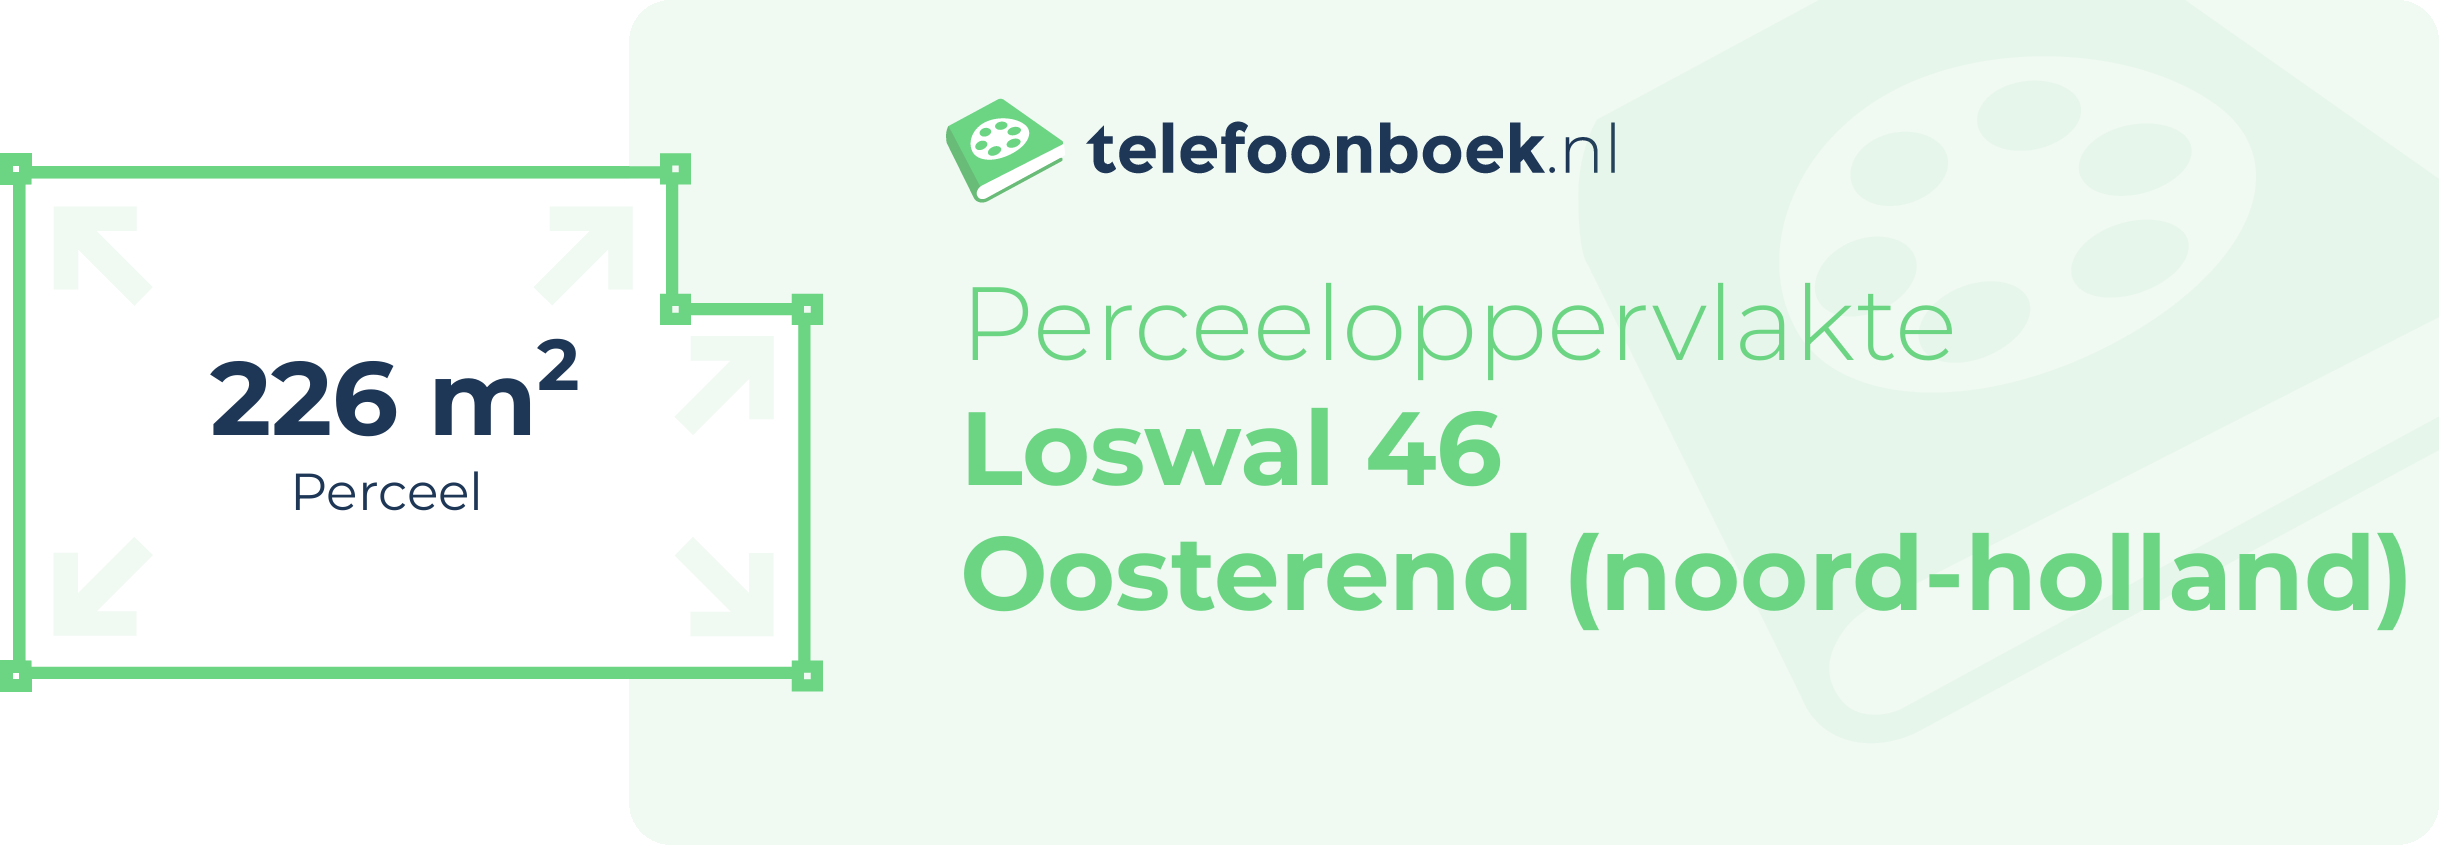 Perceeloppervlakte Loswal 46 Oosterend (Noord-Holland)